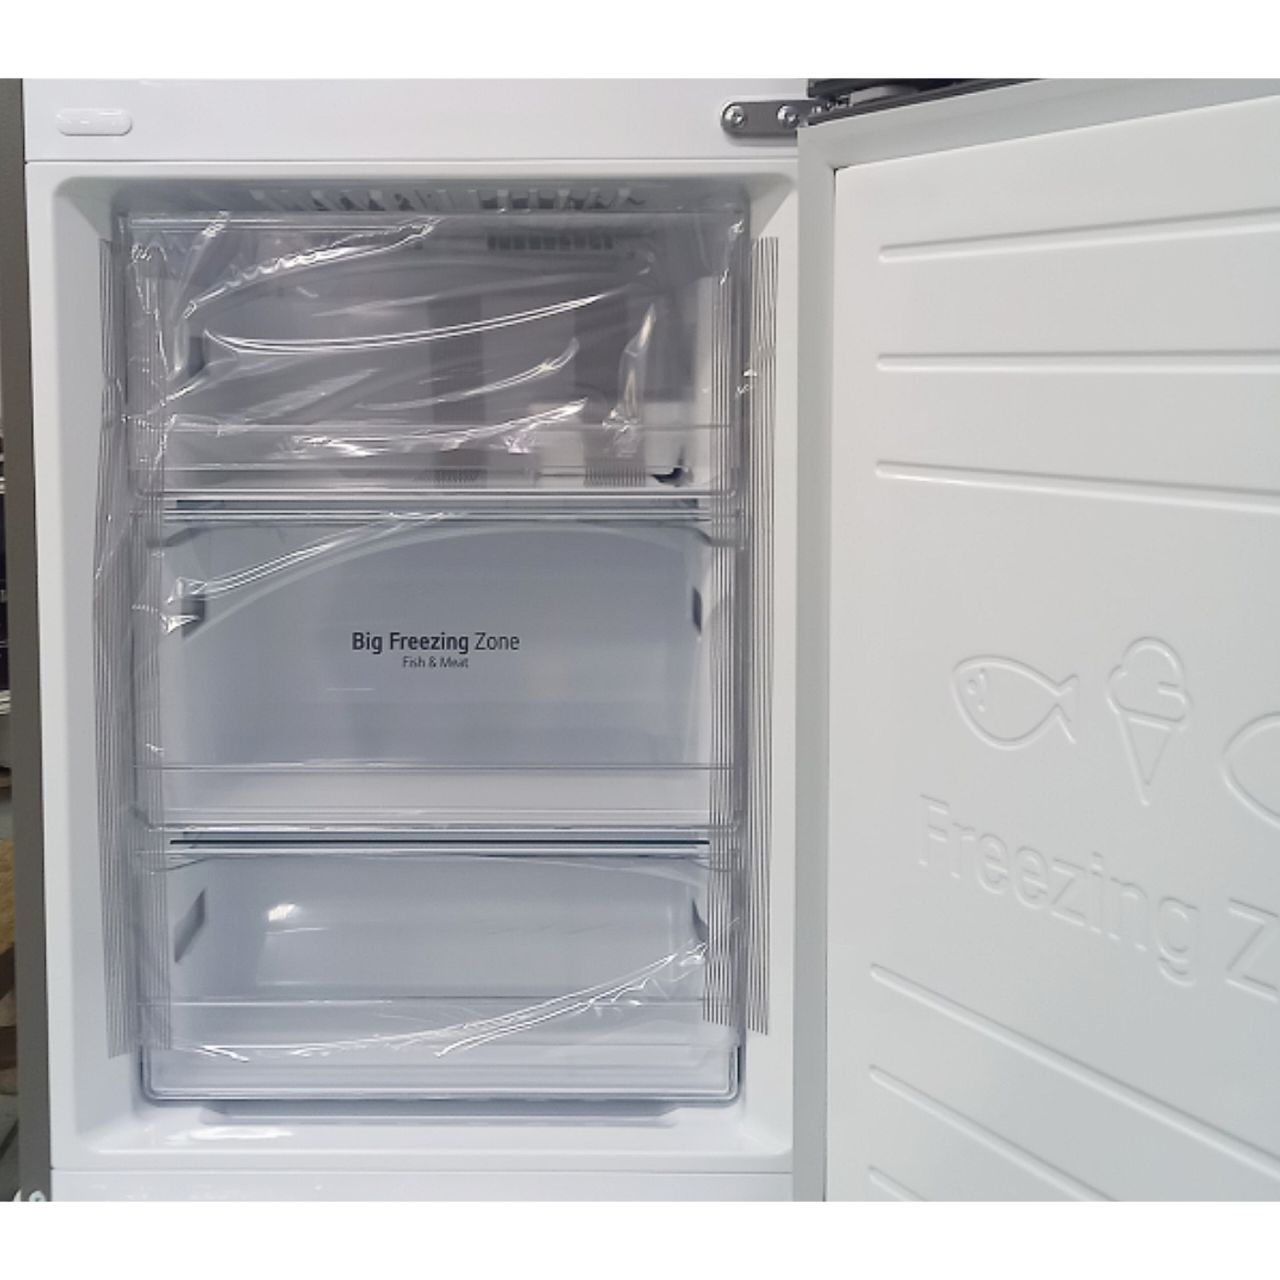 Холодильник двухкамерный LG 341 литр